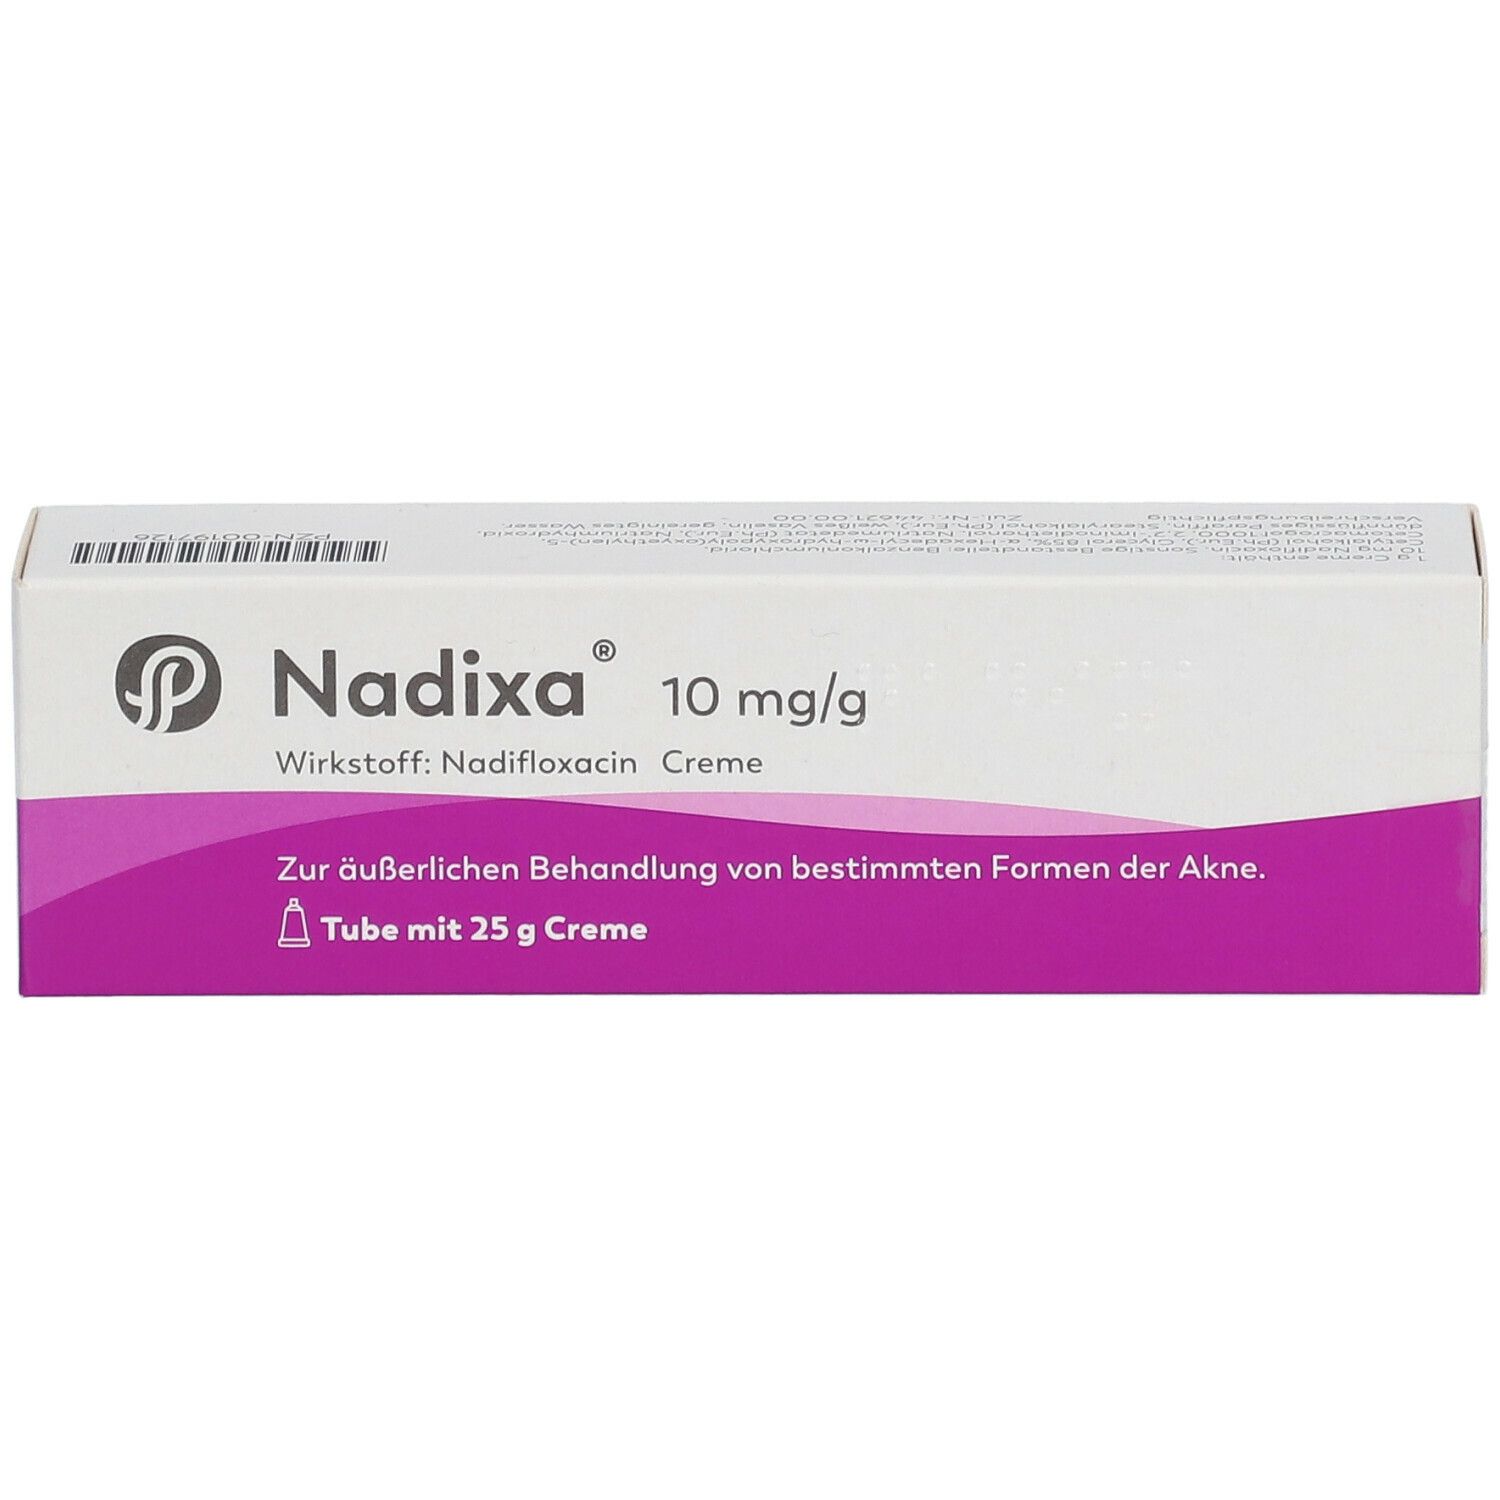 Nadixa® 10 mg/g